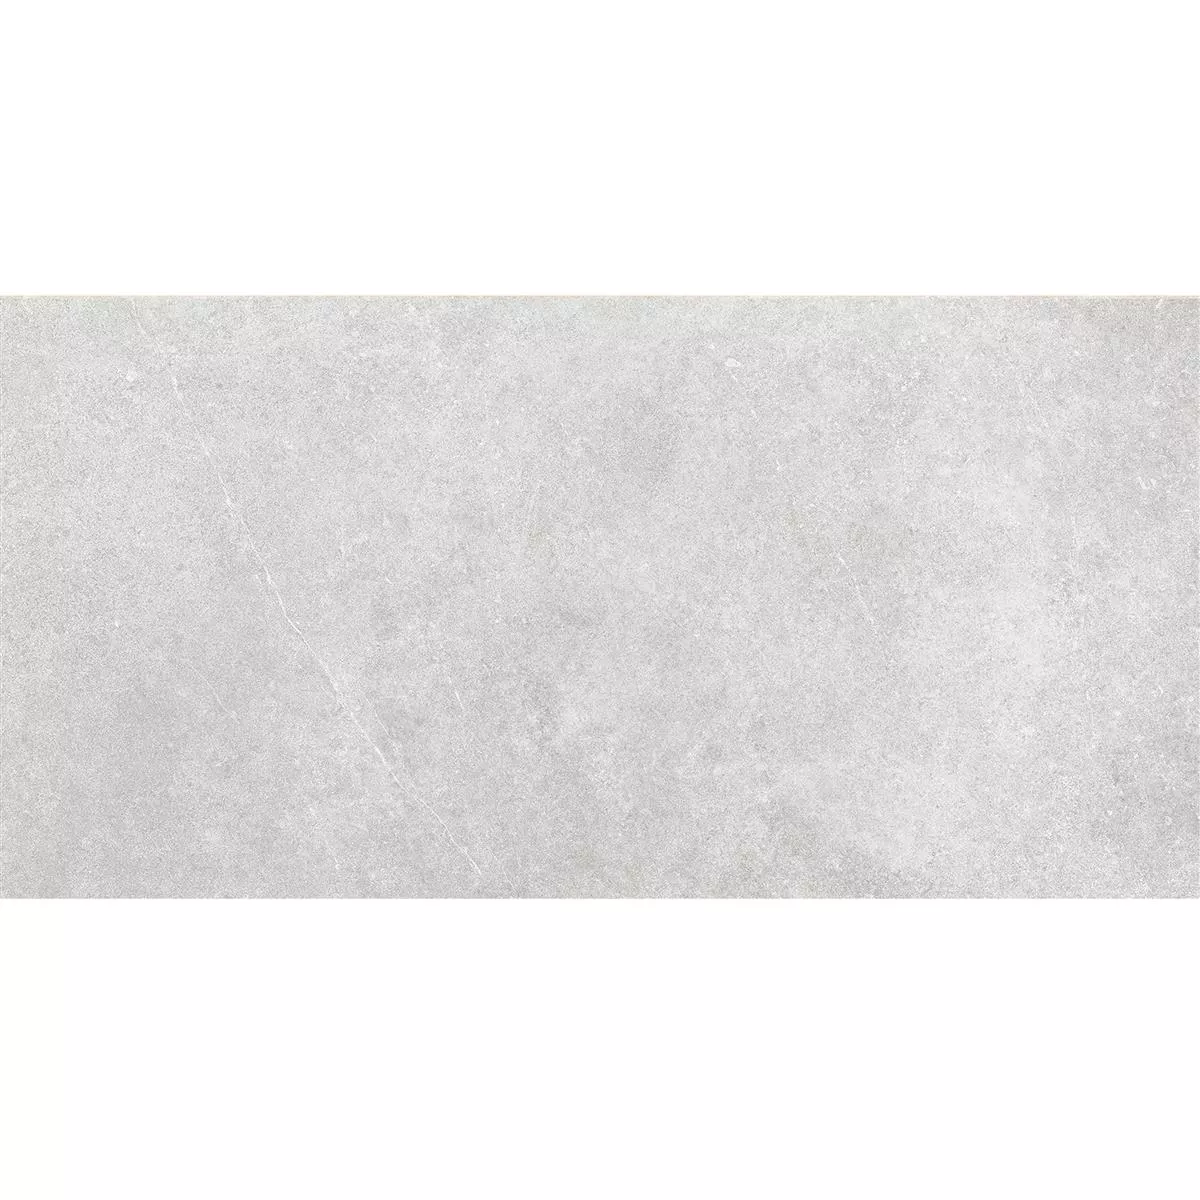 Πρότυπο Πλακάκια Δαπέδου Montana Άγυαλο Ανοιχτό Γκρι 30x60cm / R10B